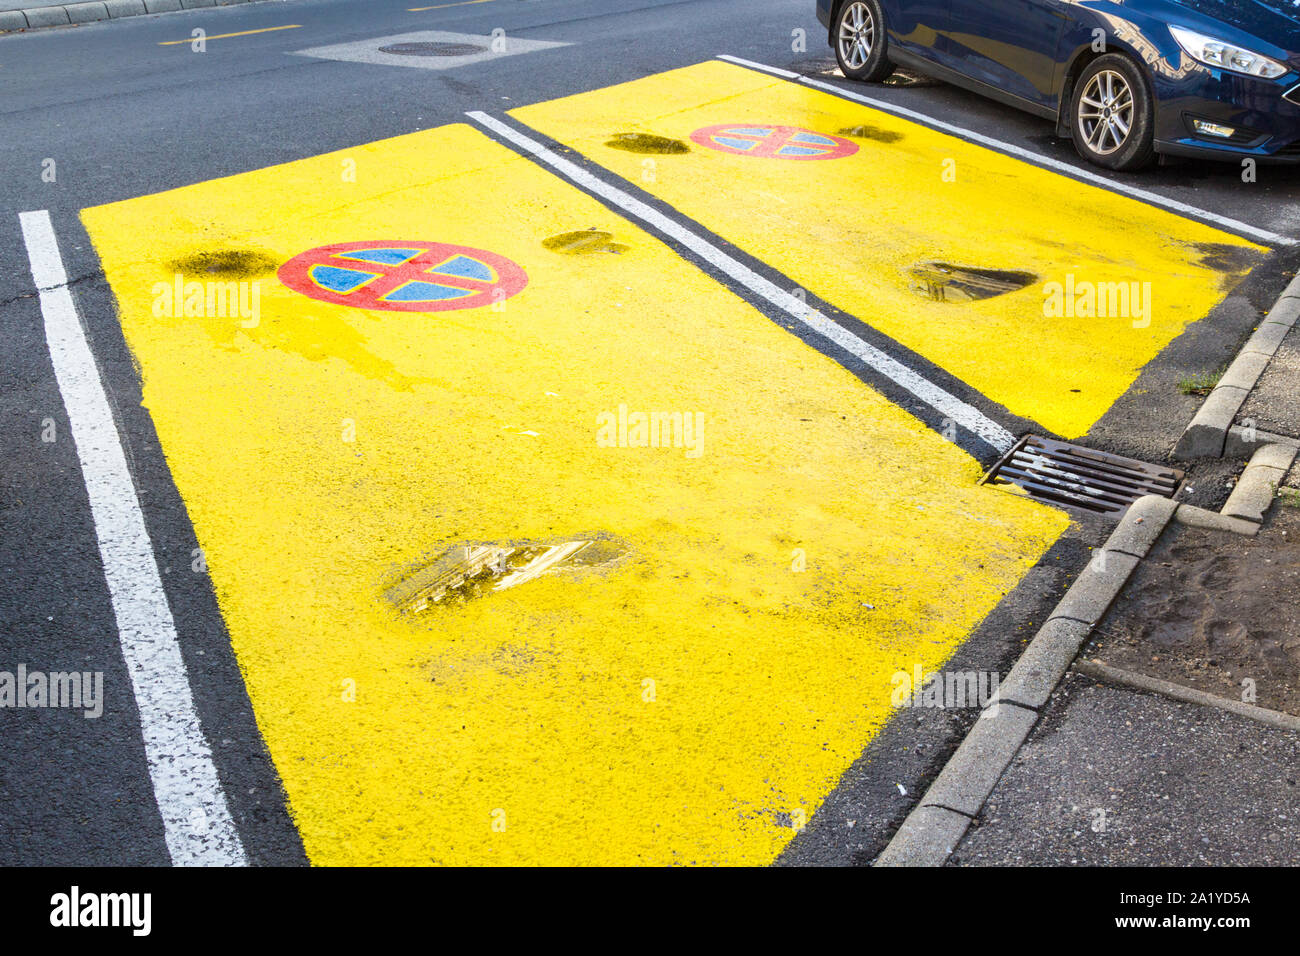 Deux places de stationnement peintes en jaune avec une voie transparente sans signe d'arrêt ou de stationnement. Parking réservé aux clients du magasin Banque D'Images